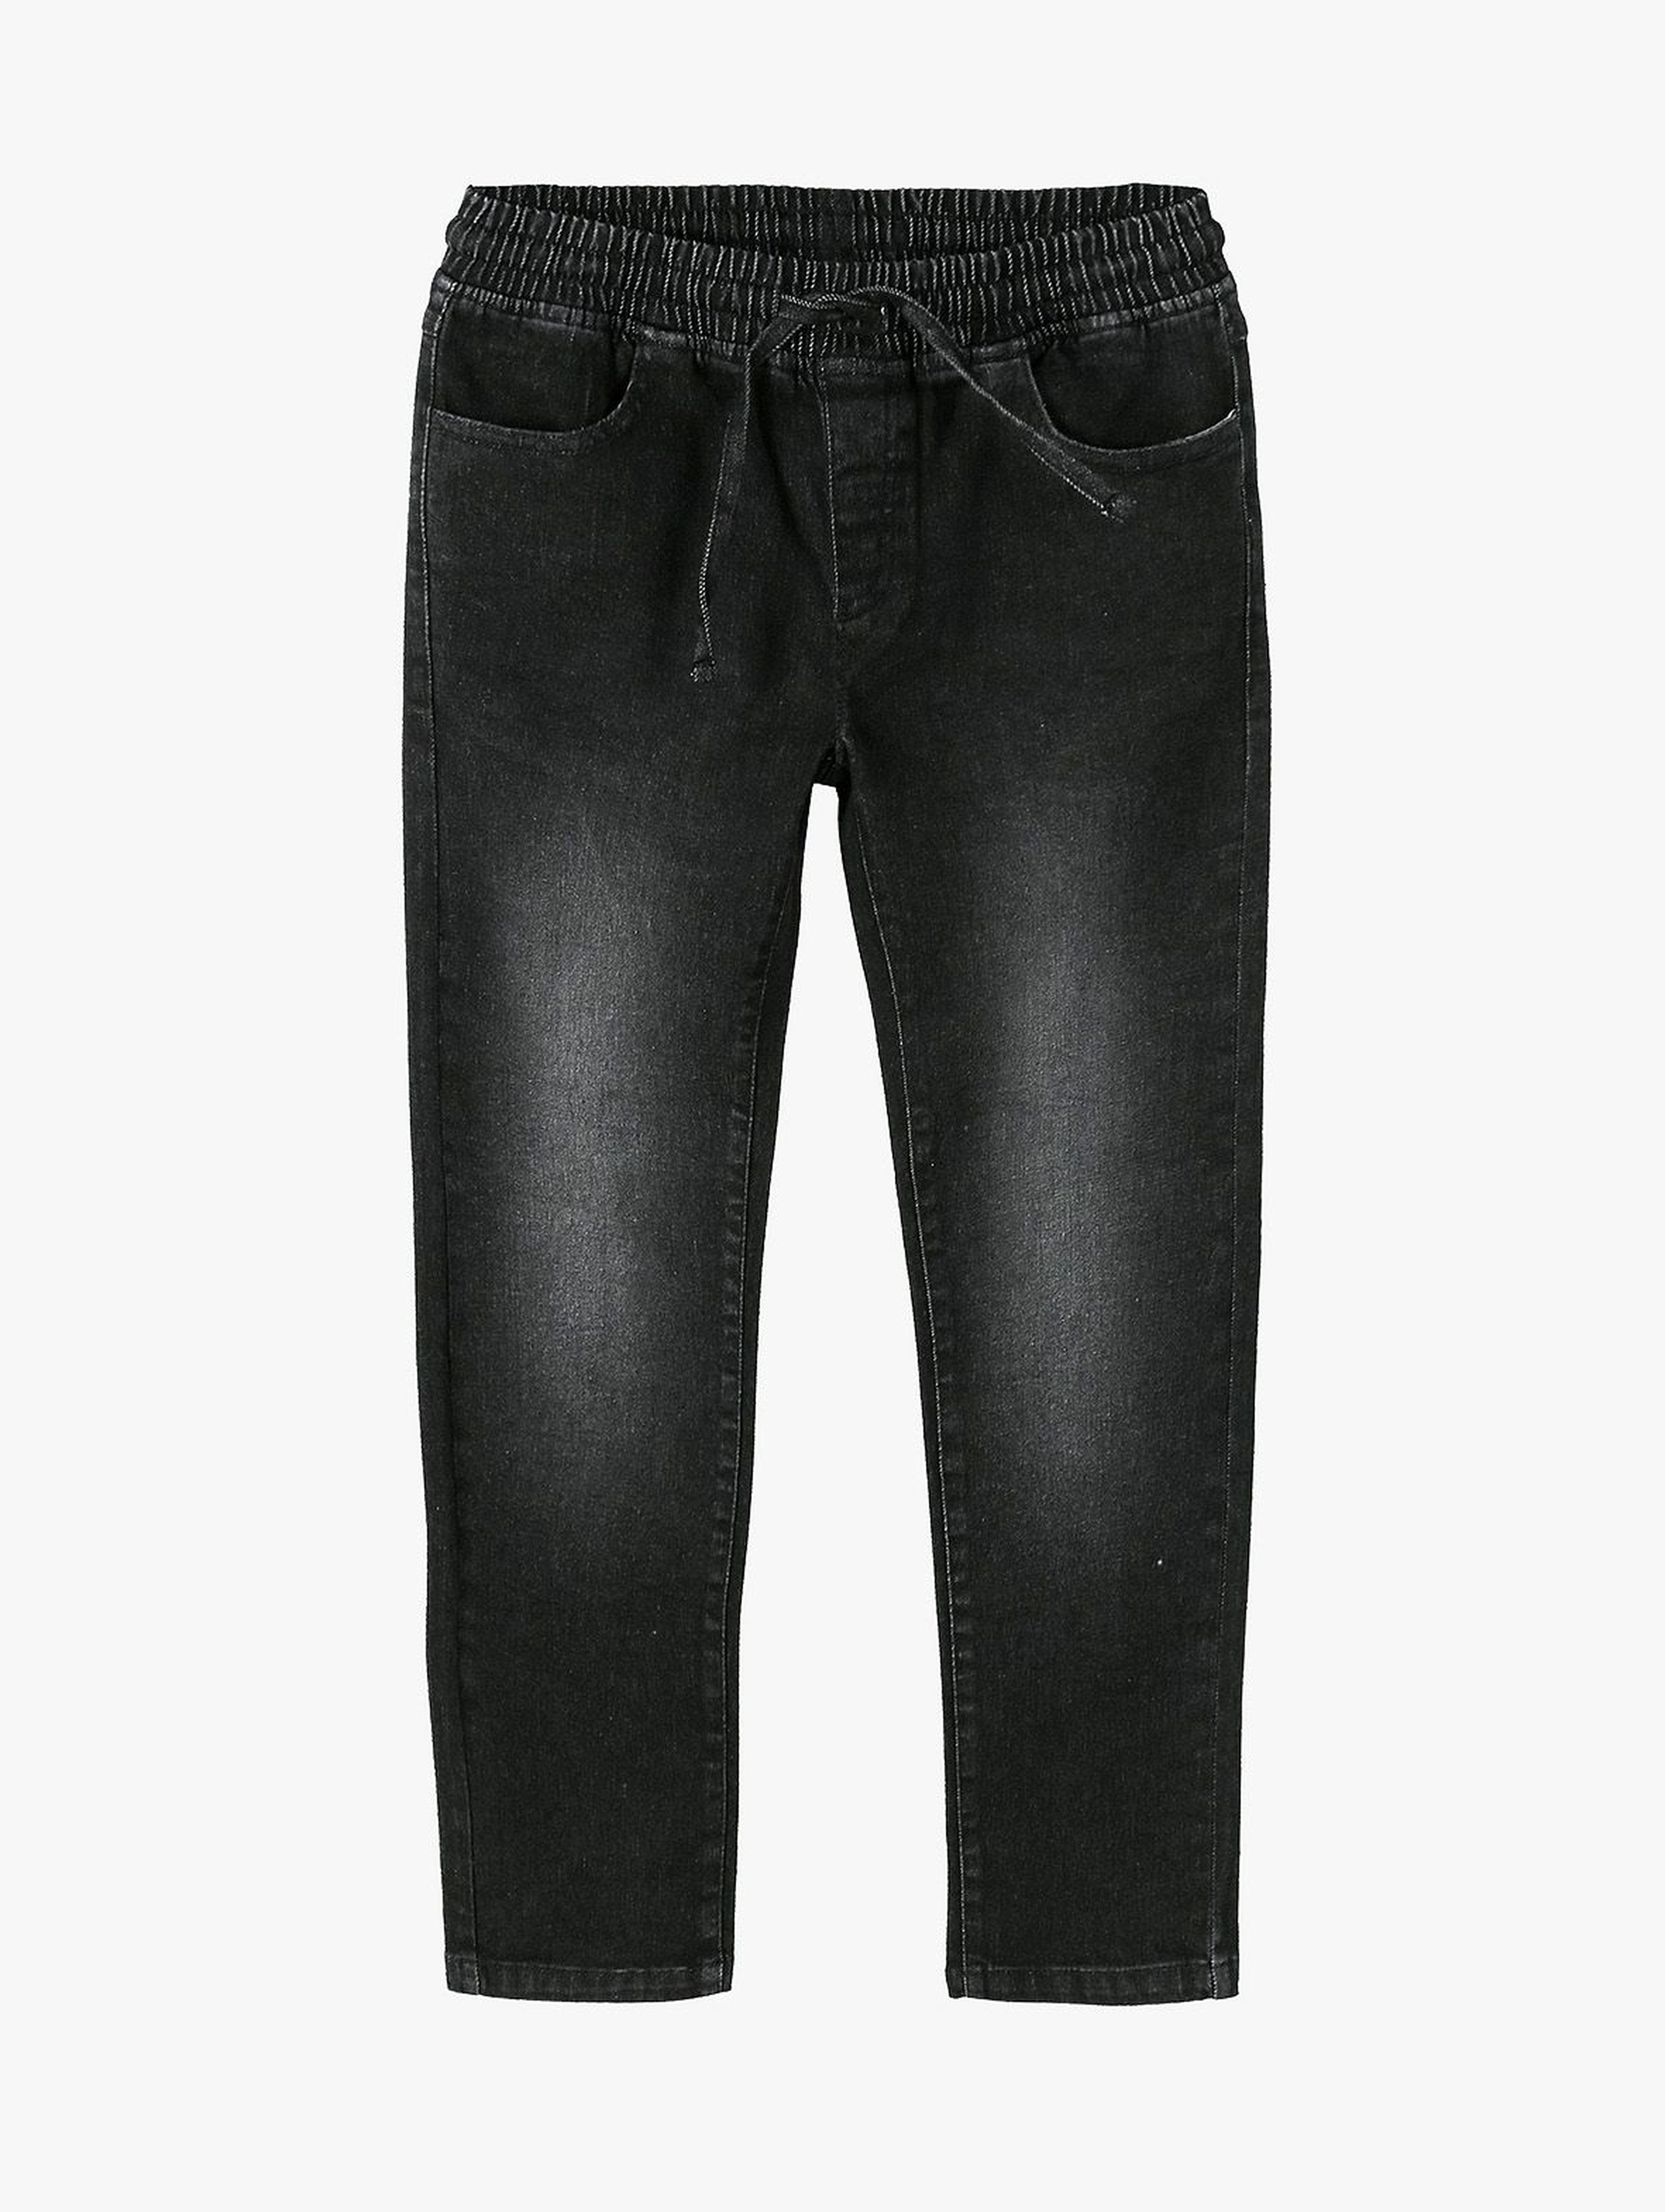 Spodnie chłopięce jeansowe czarne